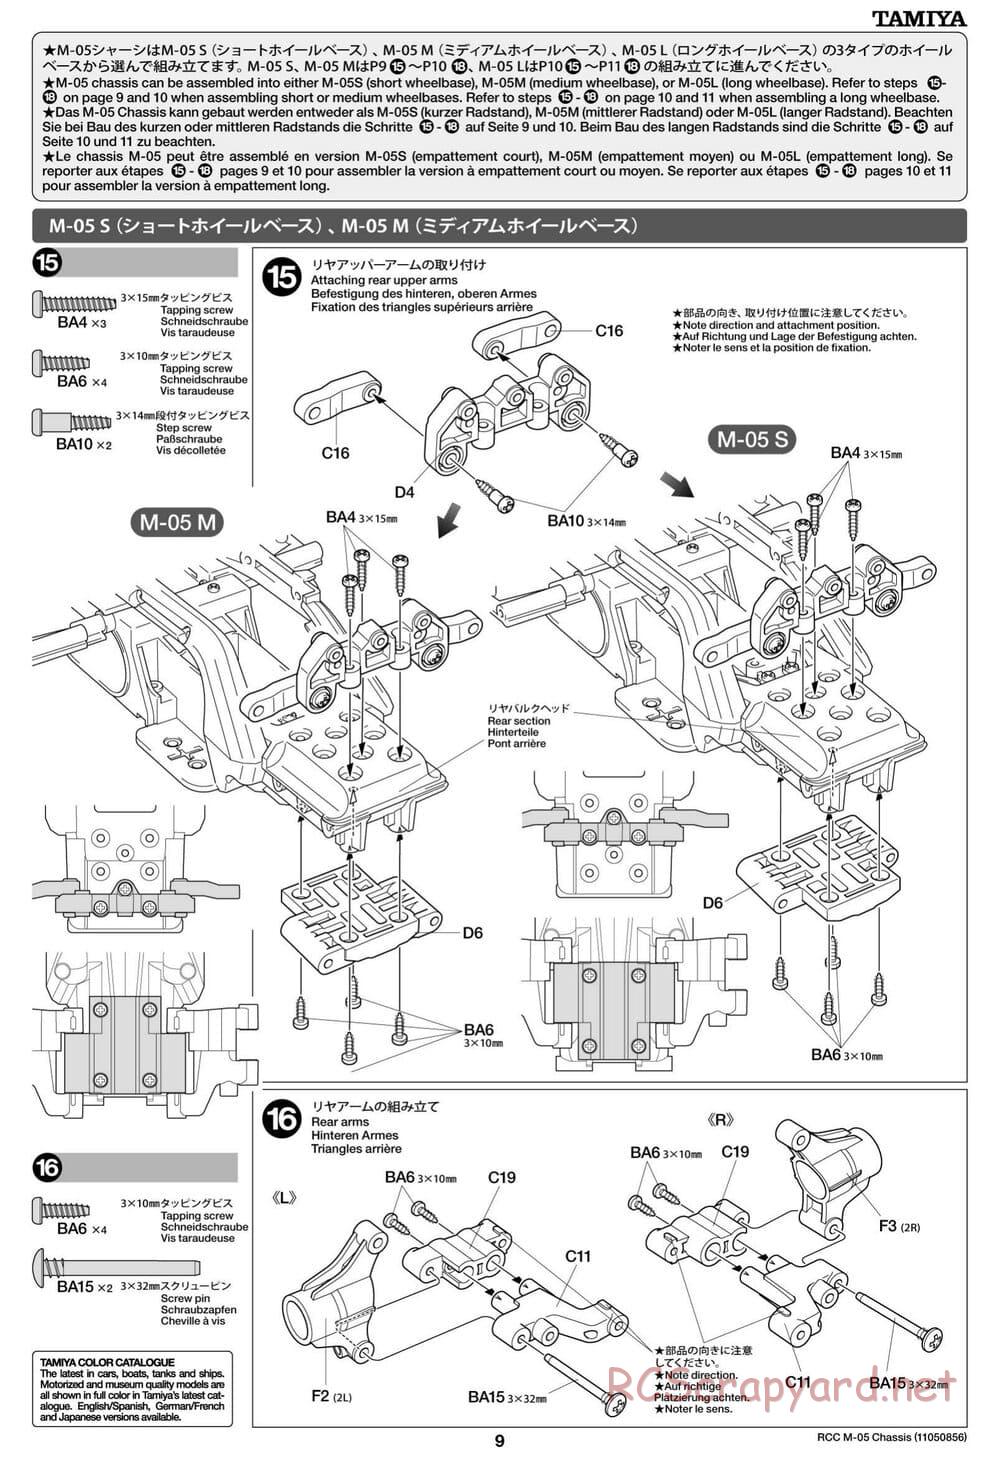 Tamiya - M-05 Chassis - Manual - Page 9